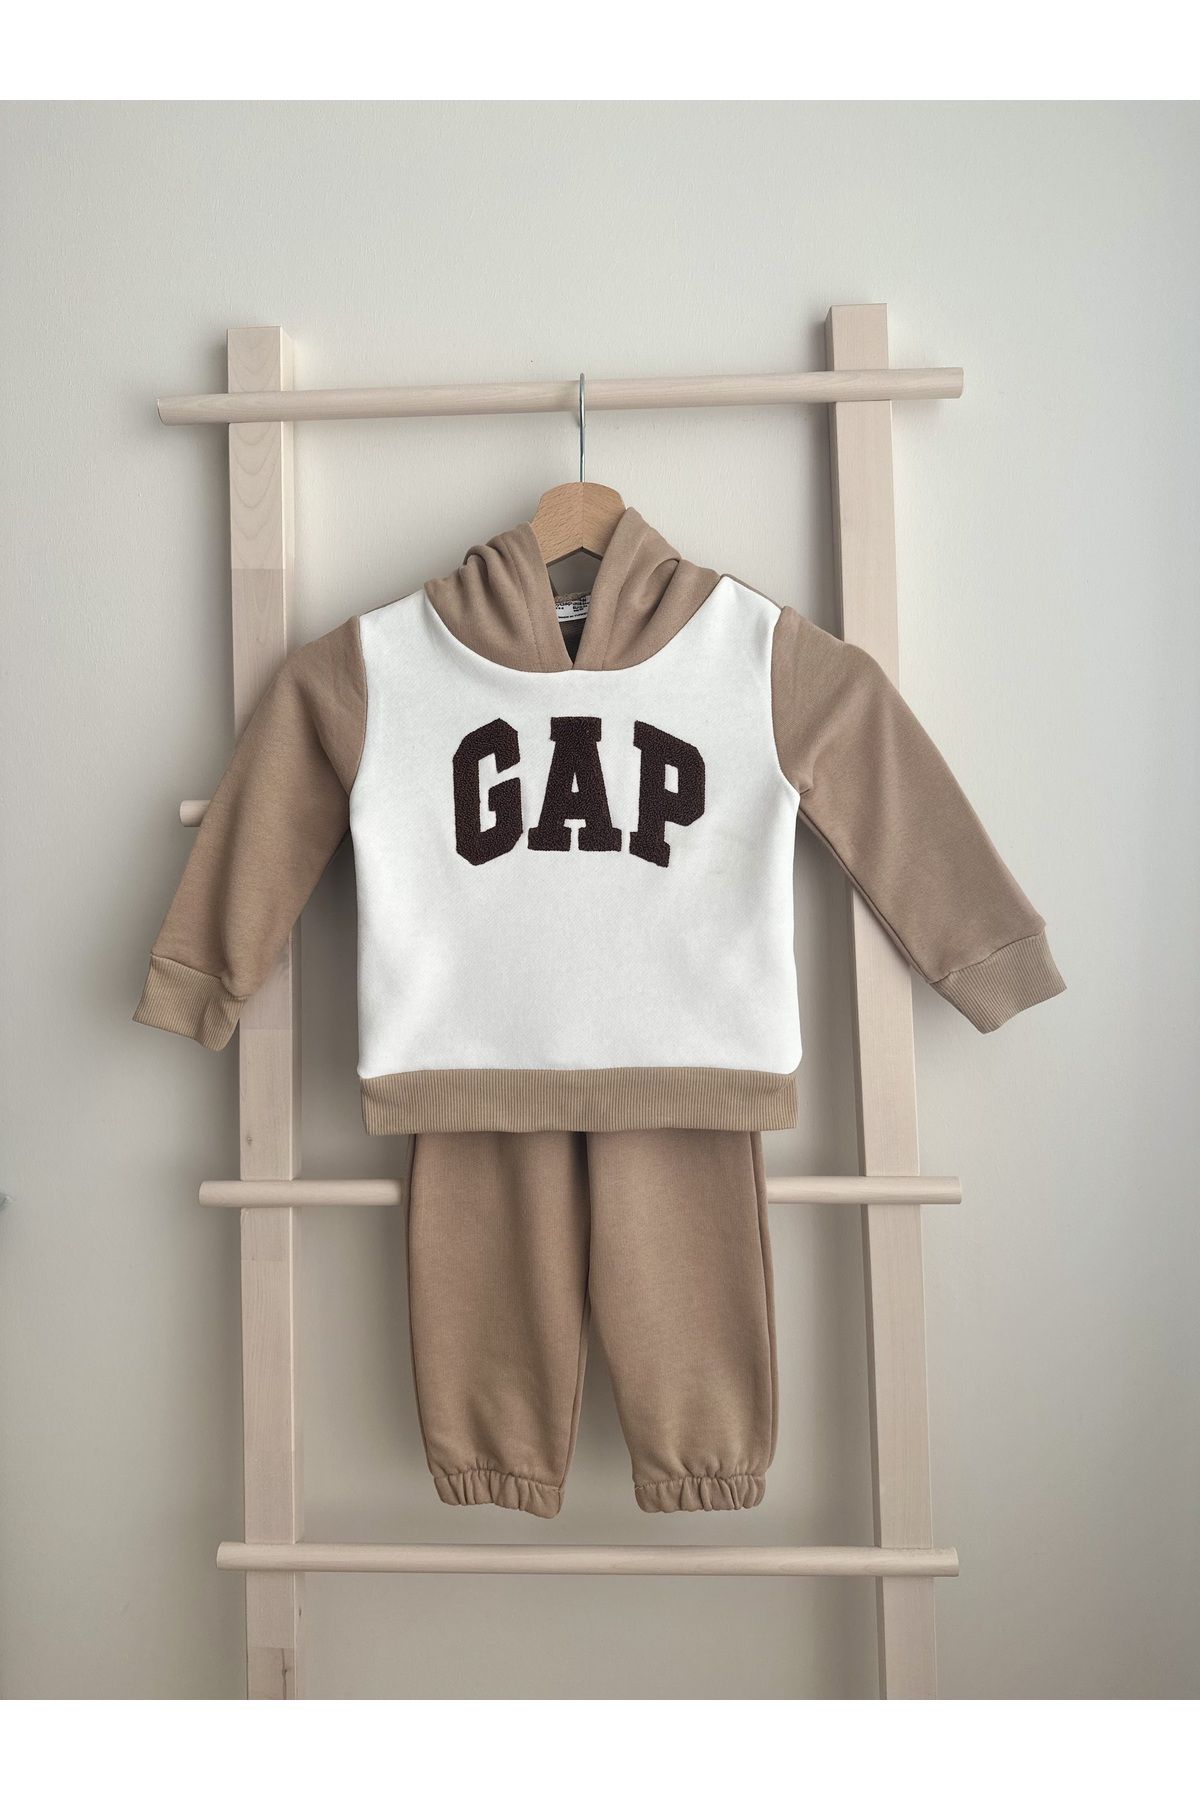 GAP Premium Kalite Gap Çocuk Takım / Gap Çocuk Alt Üst Takım